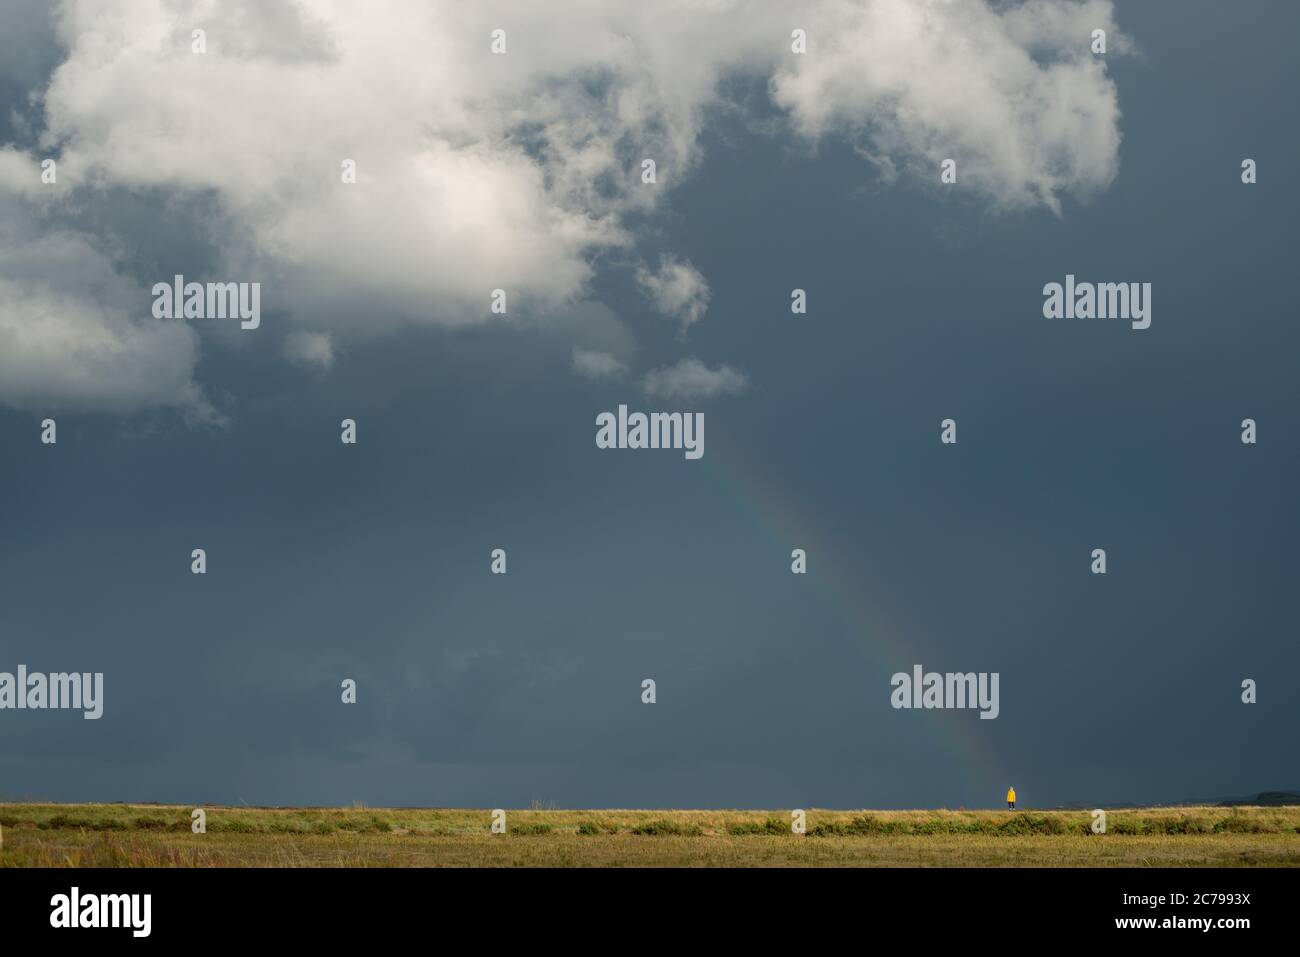 Einfaches, aber grafisches Bild einer einzigen Figur in gelber Kleidung, die am Fuße eines Regenbogens gegen einen dunklen Himmel und eine große weiße Wolke steht Stockfoto